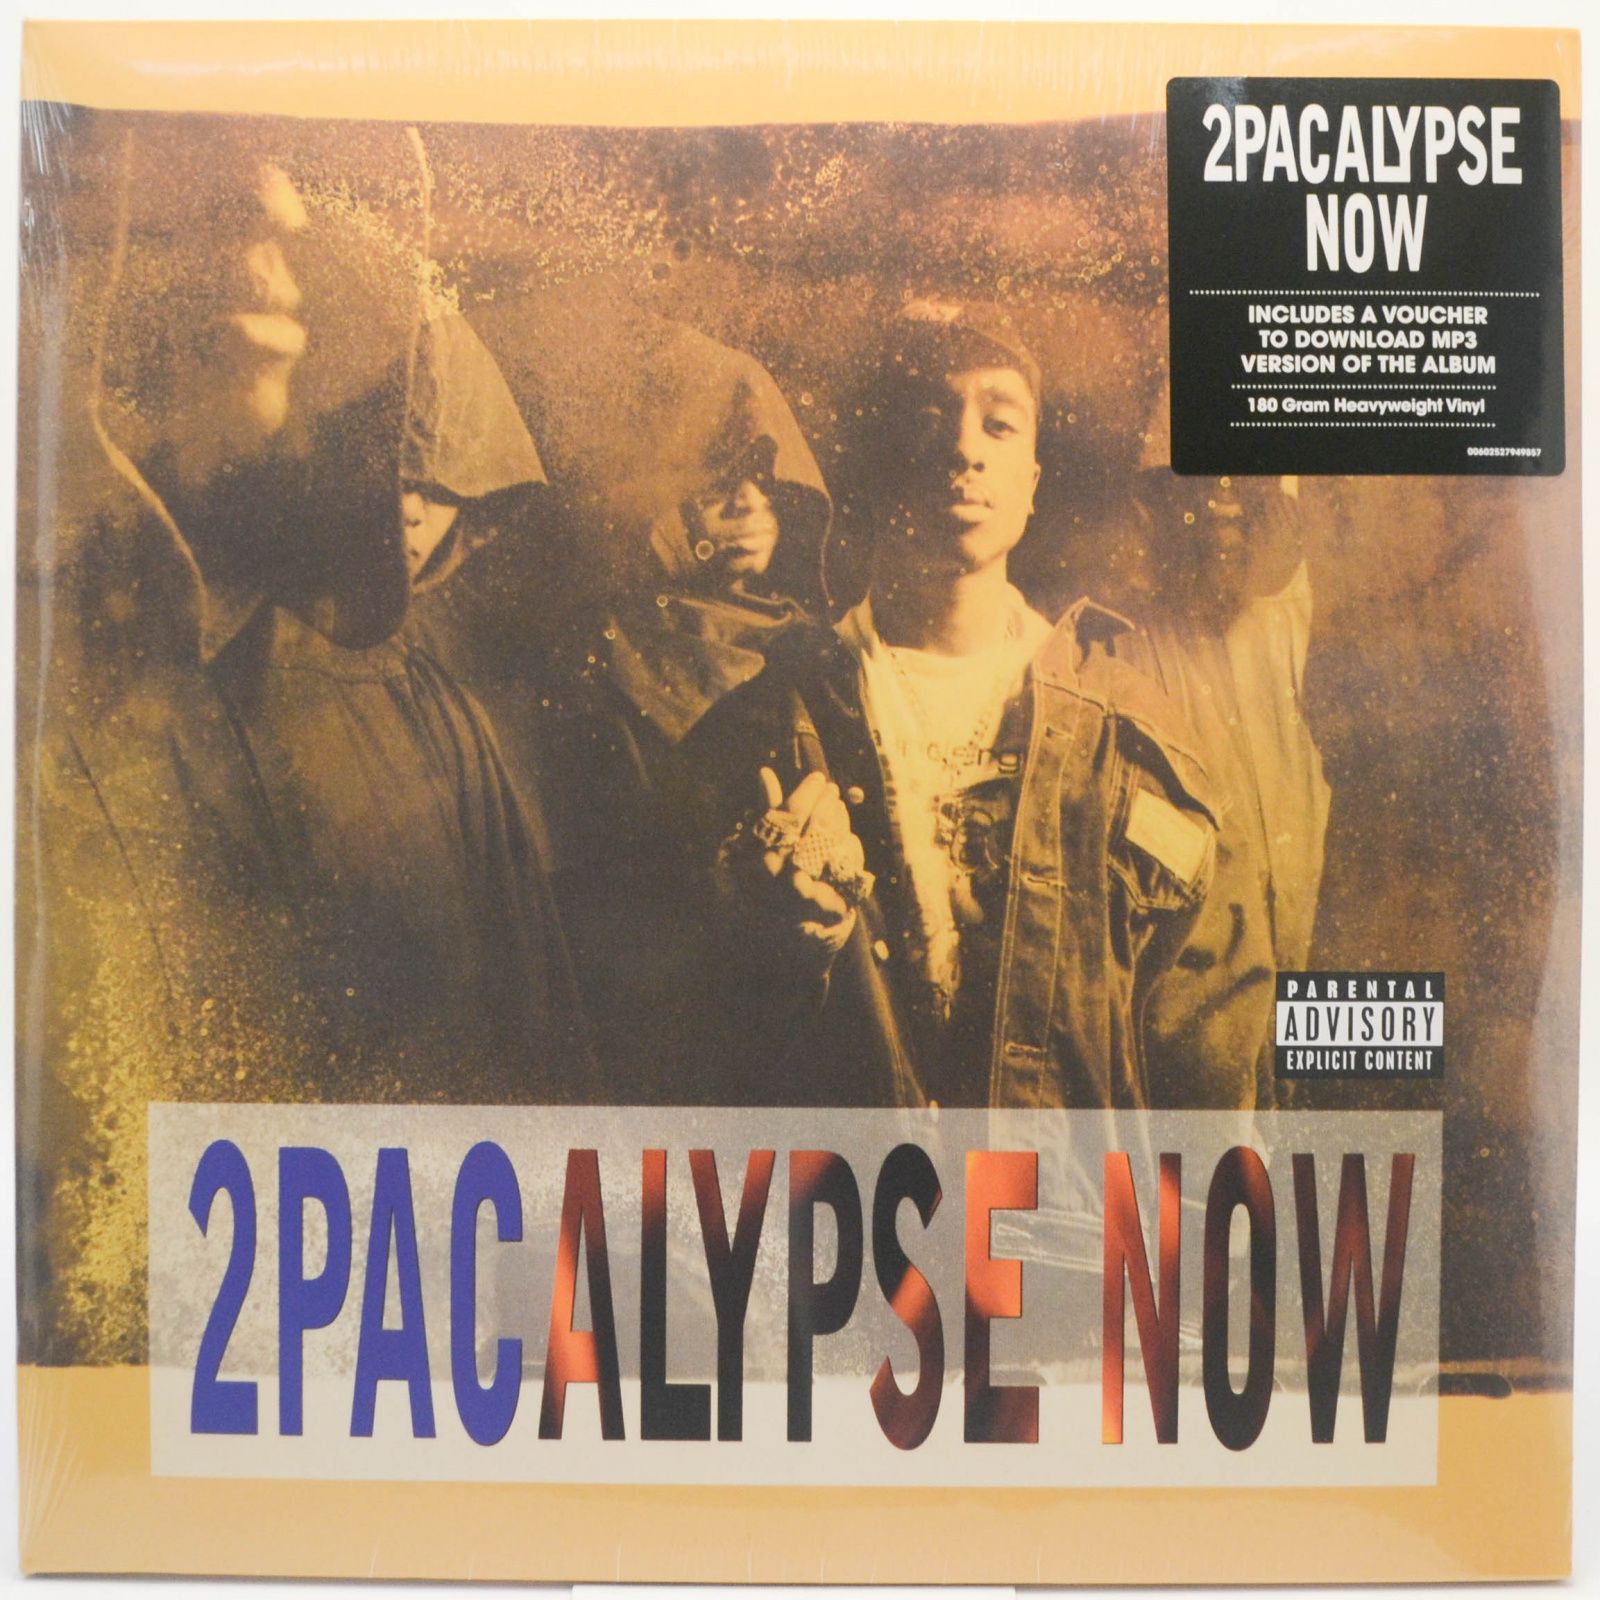 2Pacalypse Now (2LP), 1991